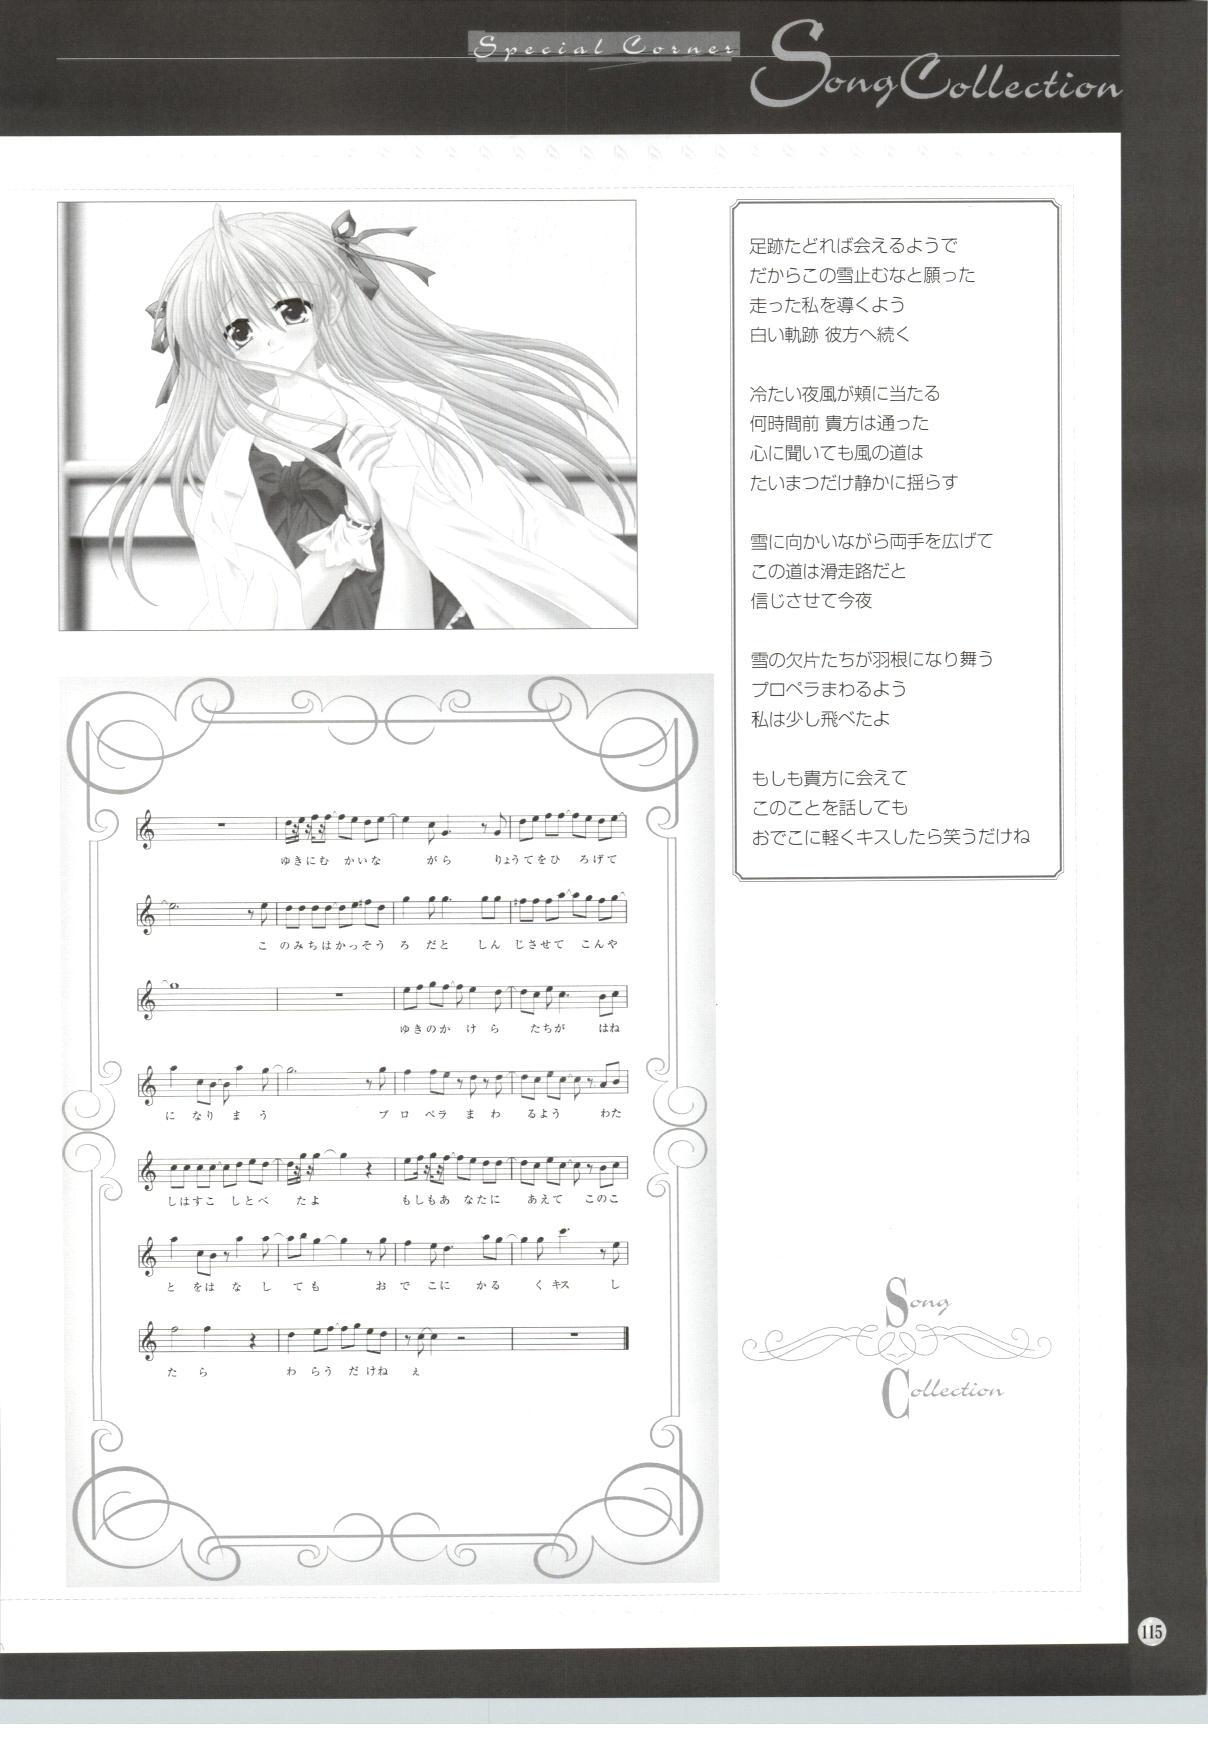 [Sakurazawa Izumi] Silence - Seinaru Yoru no Kane no Naka de... Tenshi no Album - Sakurazawa Izumi Artworks 109